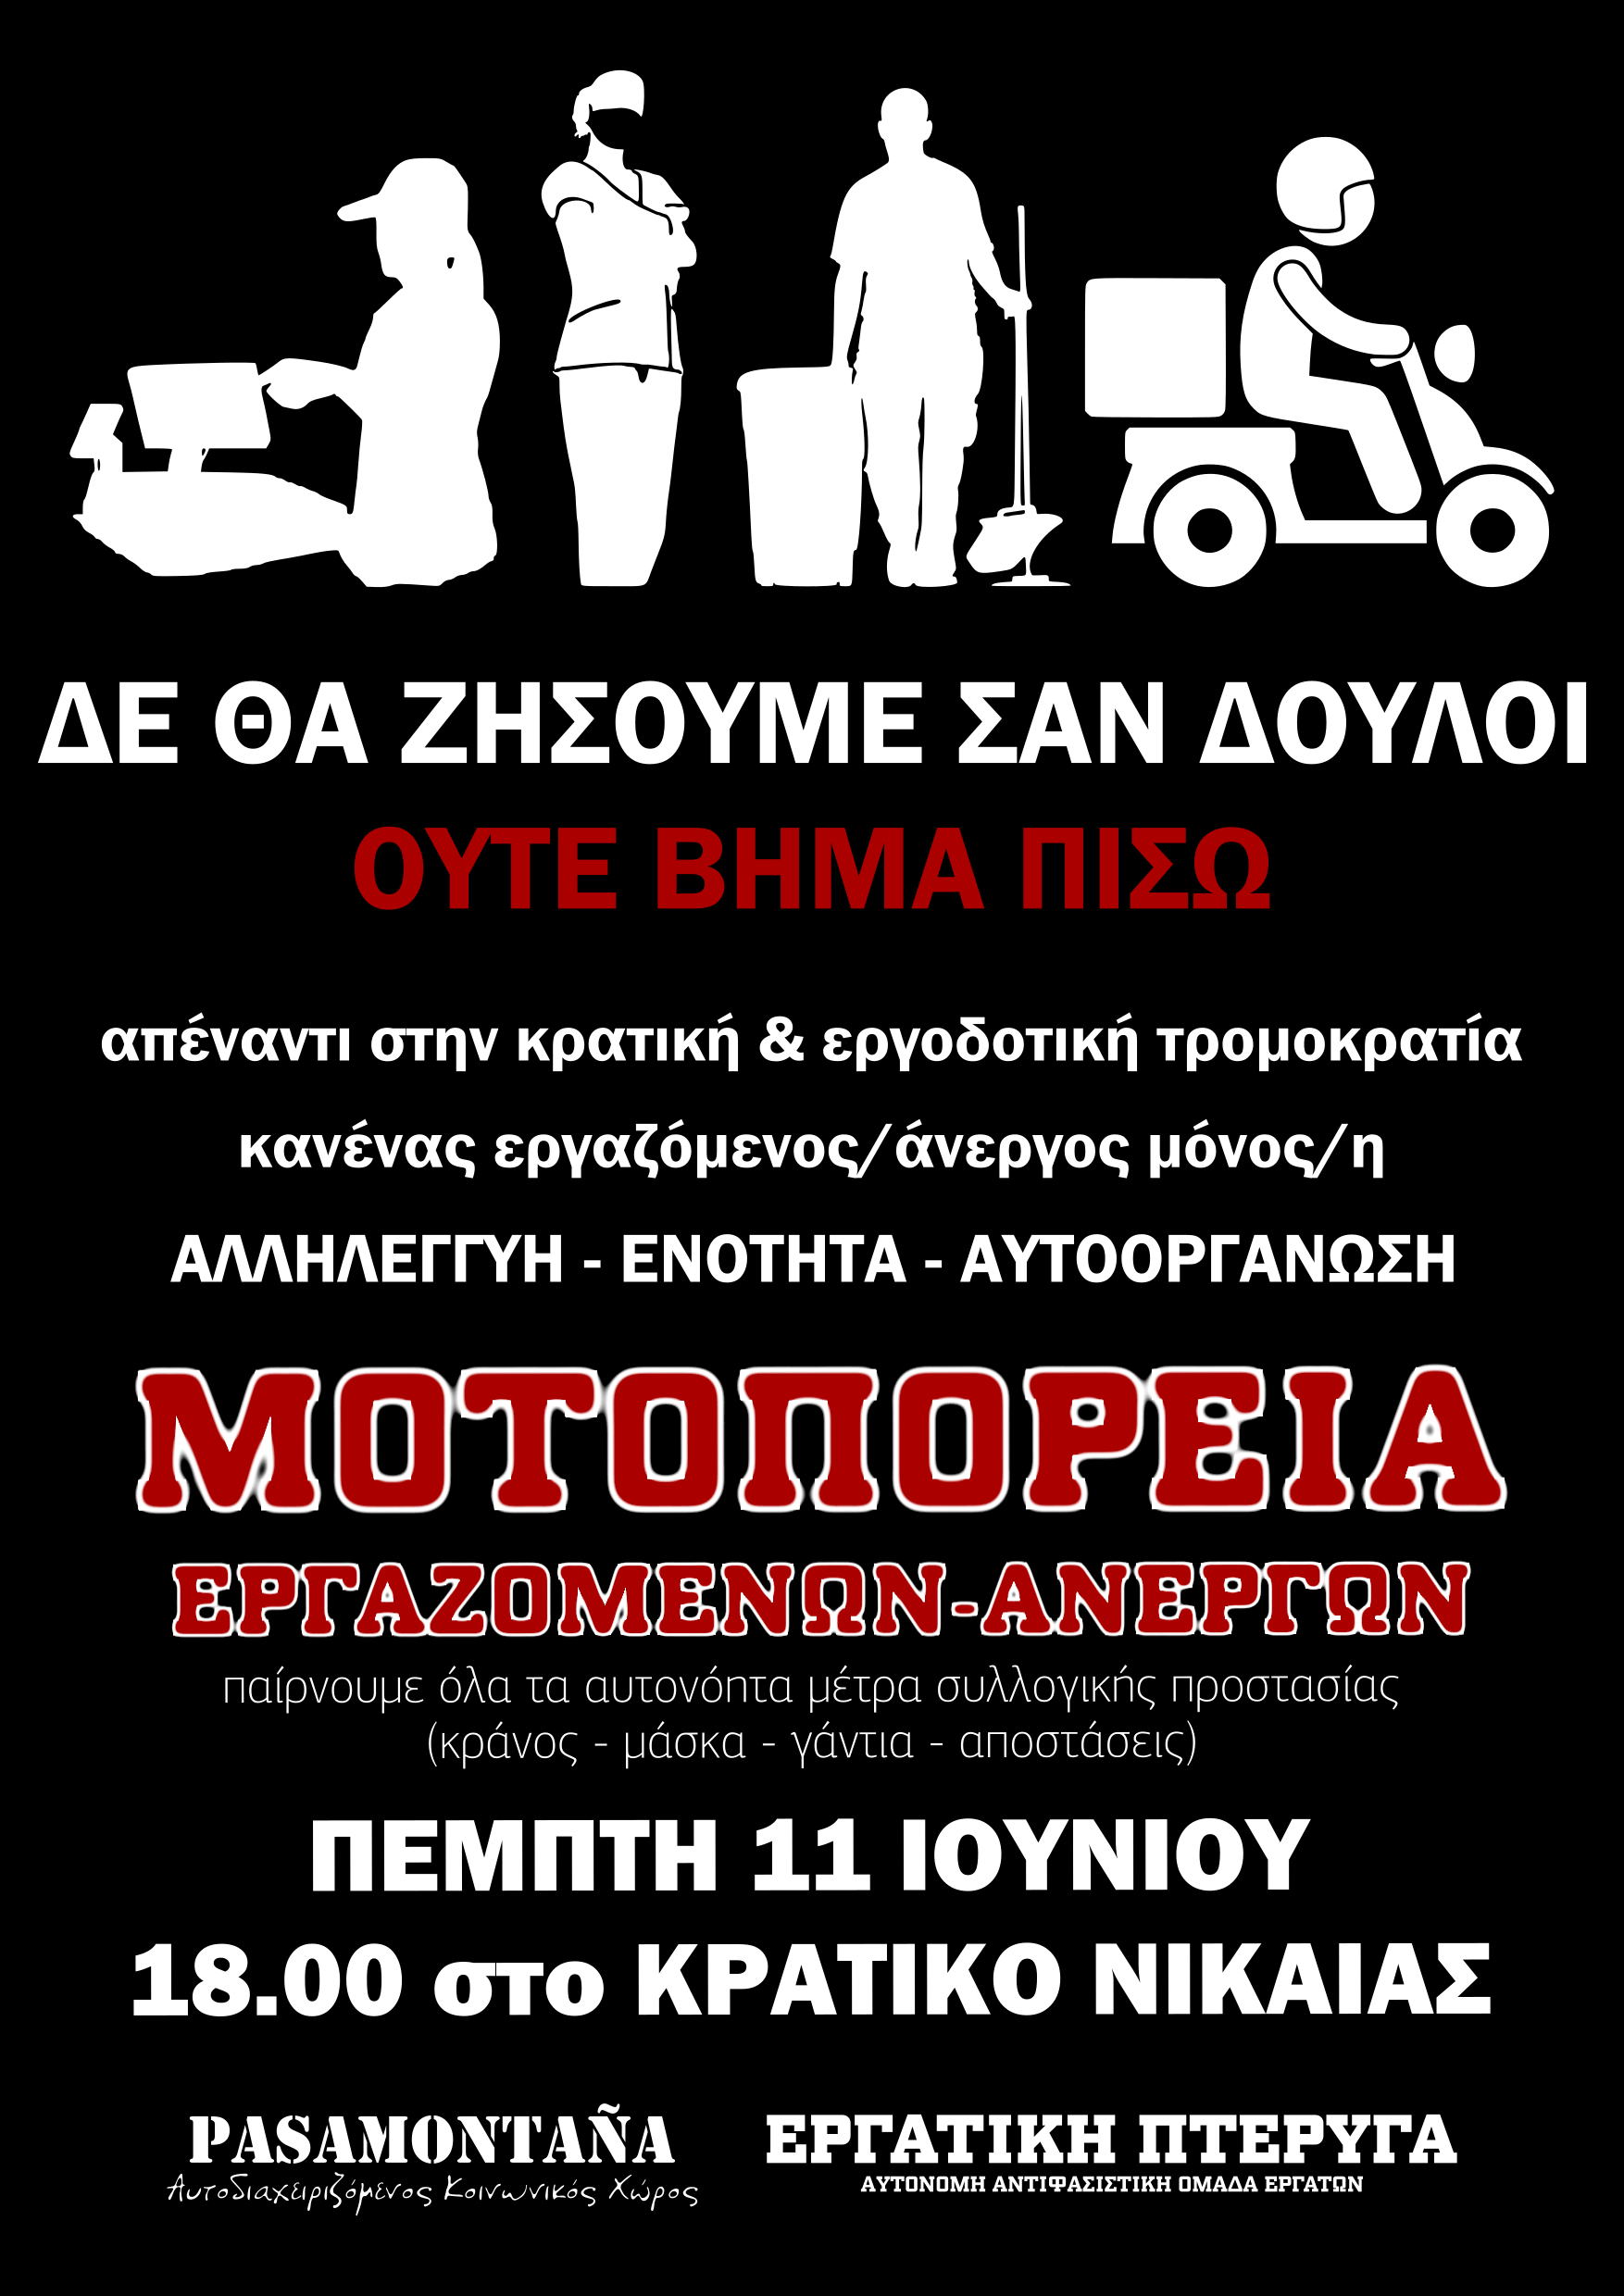 Ρουβίκωνας: Κάλεσμα στήριξης μοτοπορείας στο Κρατικό Νίκαιας την Πέμπτη 11/6 στις 18:00